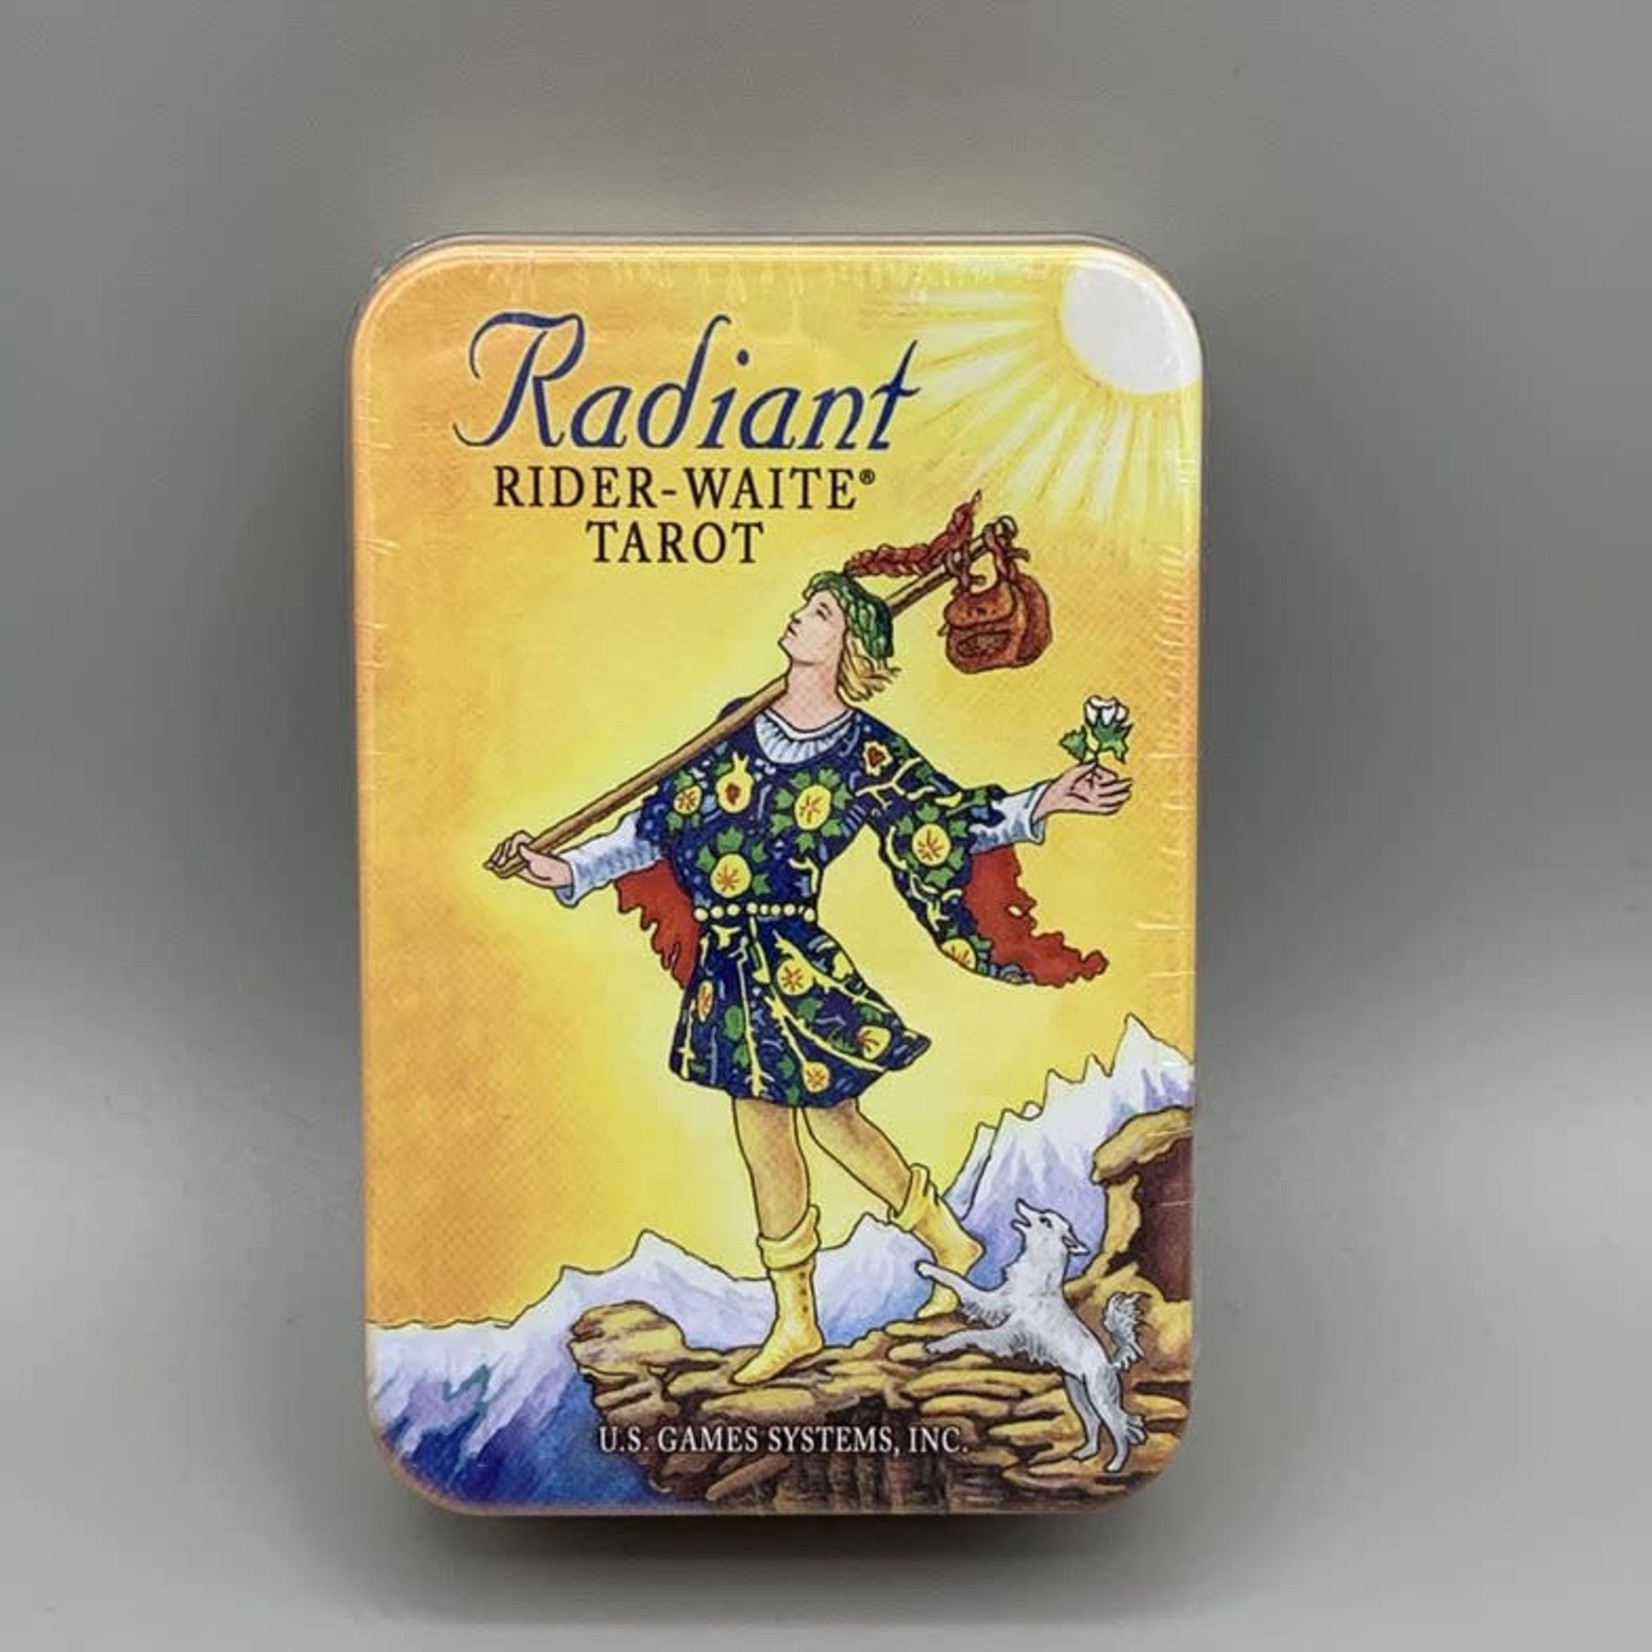 Tarot/Oracle Cards Tarot Cards: Radiant Rider-Waite Tarot in a Tin by Pamela Colman Smith & Arthur Edward Waite